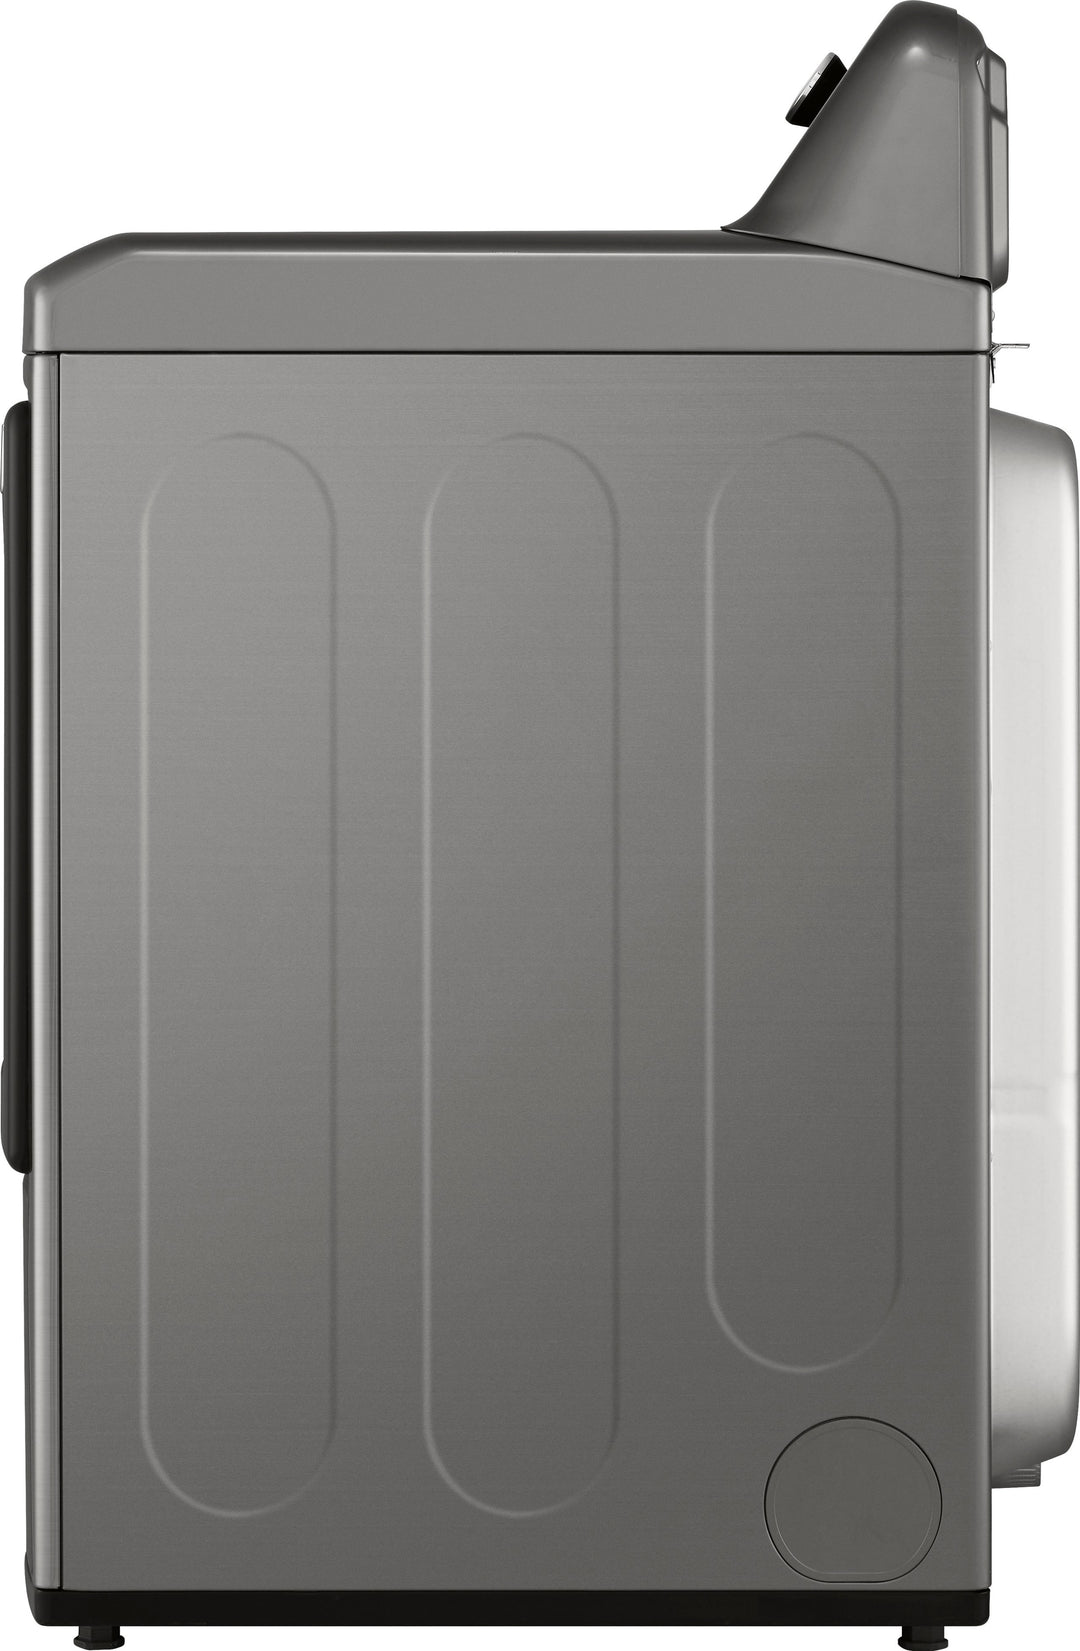 LG - 7.3 Cu. Ft. Smart Gas Dryer with EasyLoad Door - Graphite steel_15